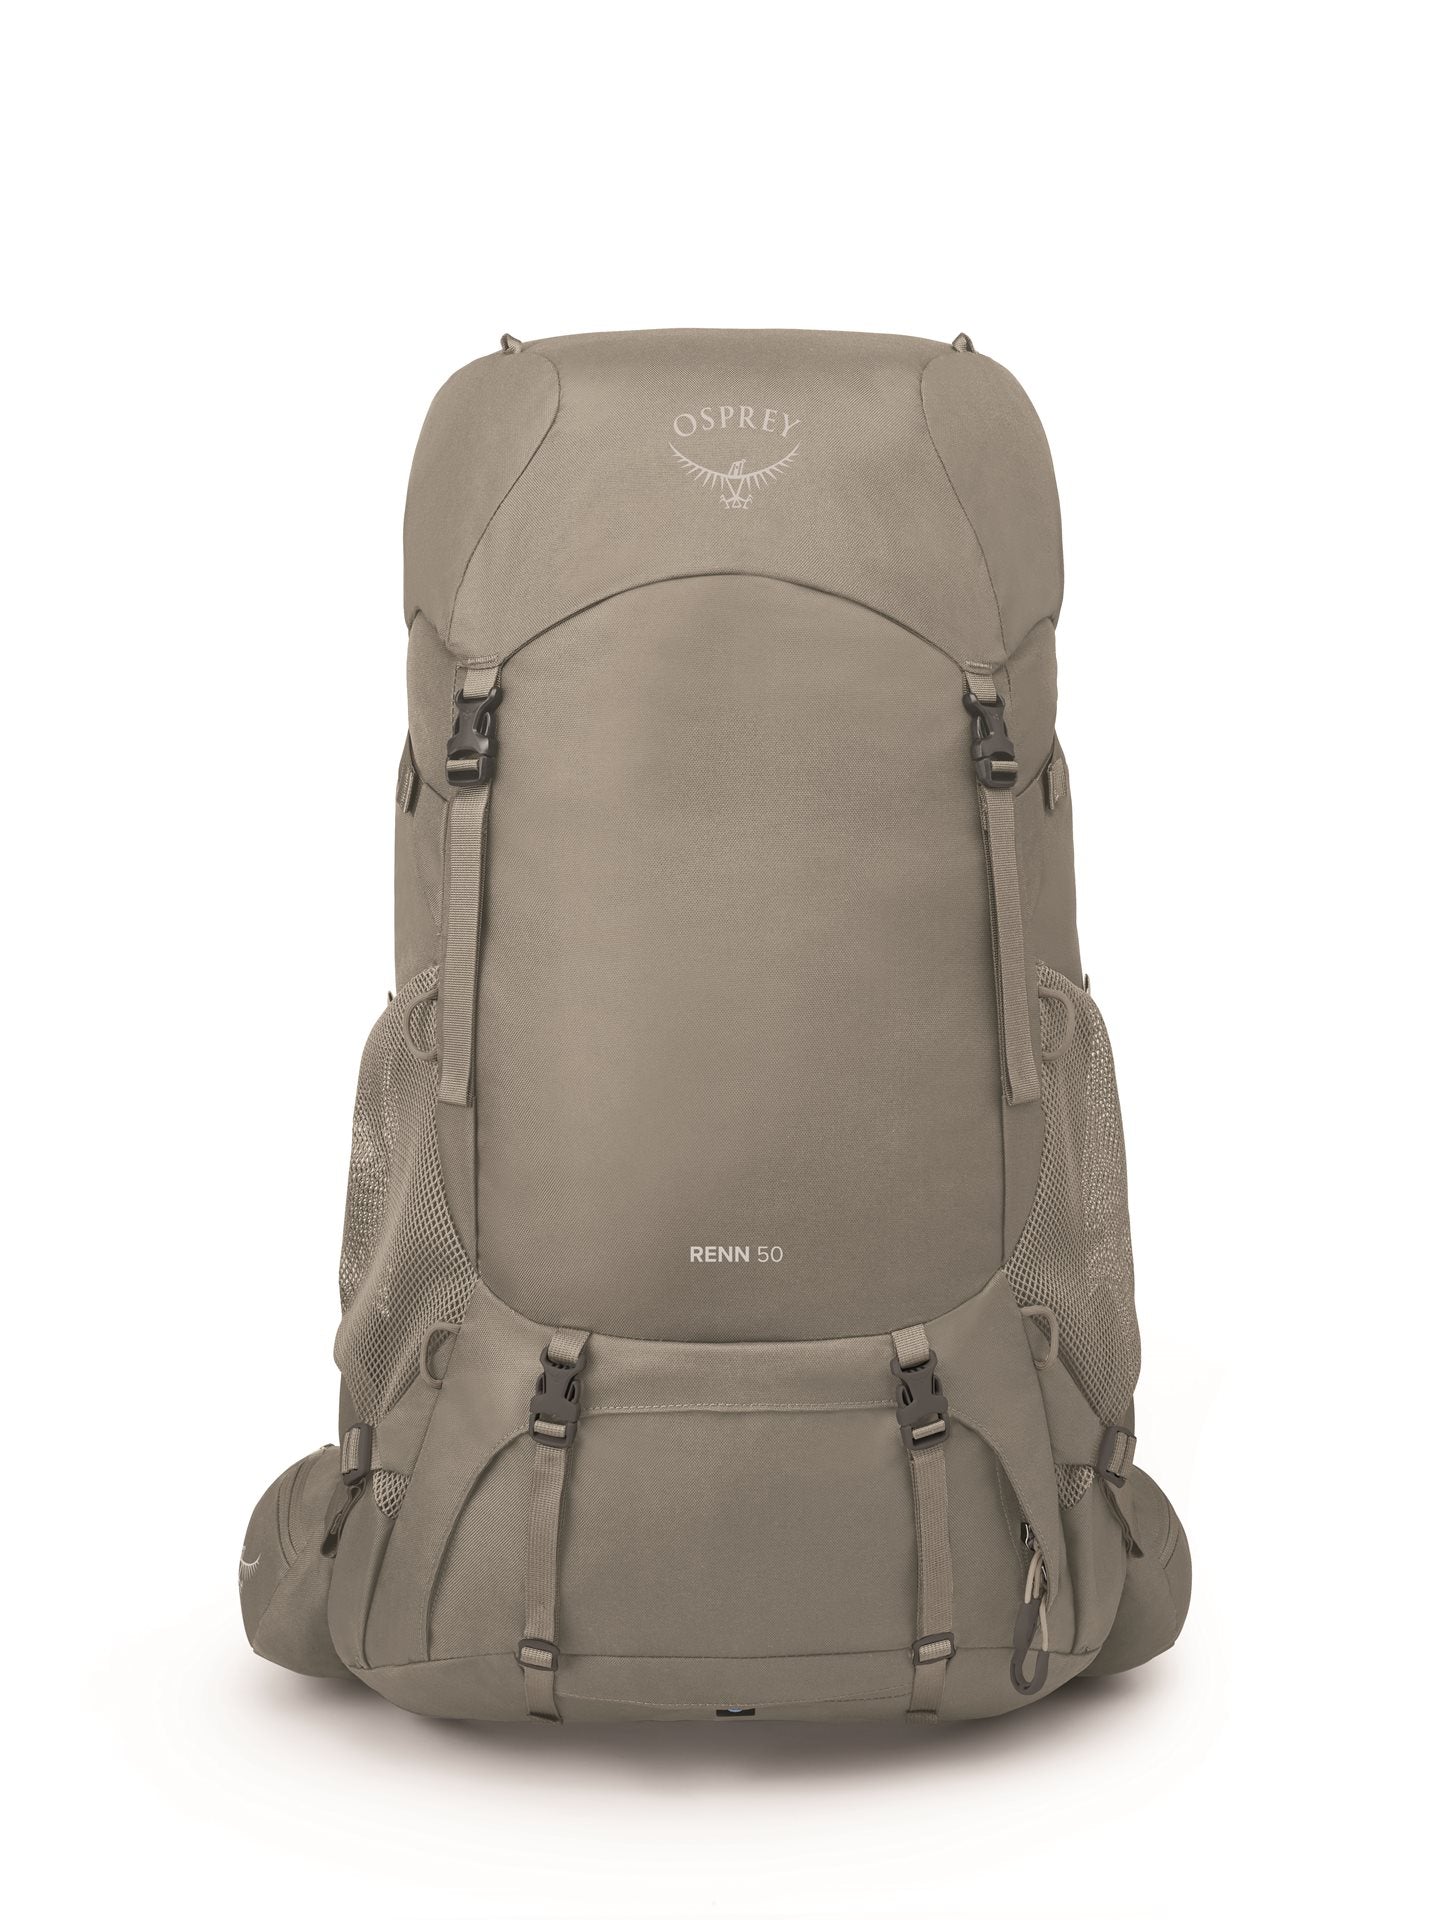 Osprey Renn 50 -Pediment Grey/Linen Tan Backpack - Reisartikelen-nl